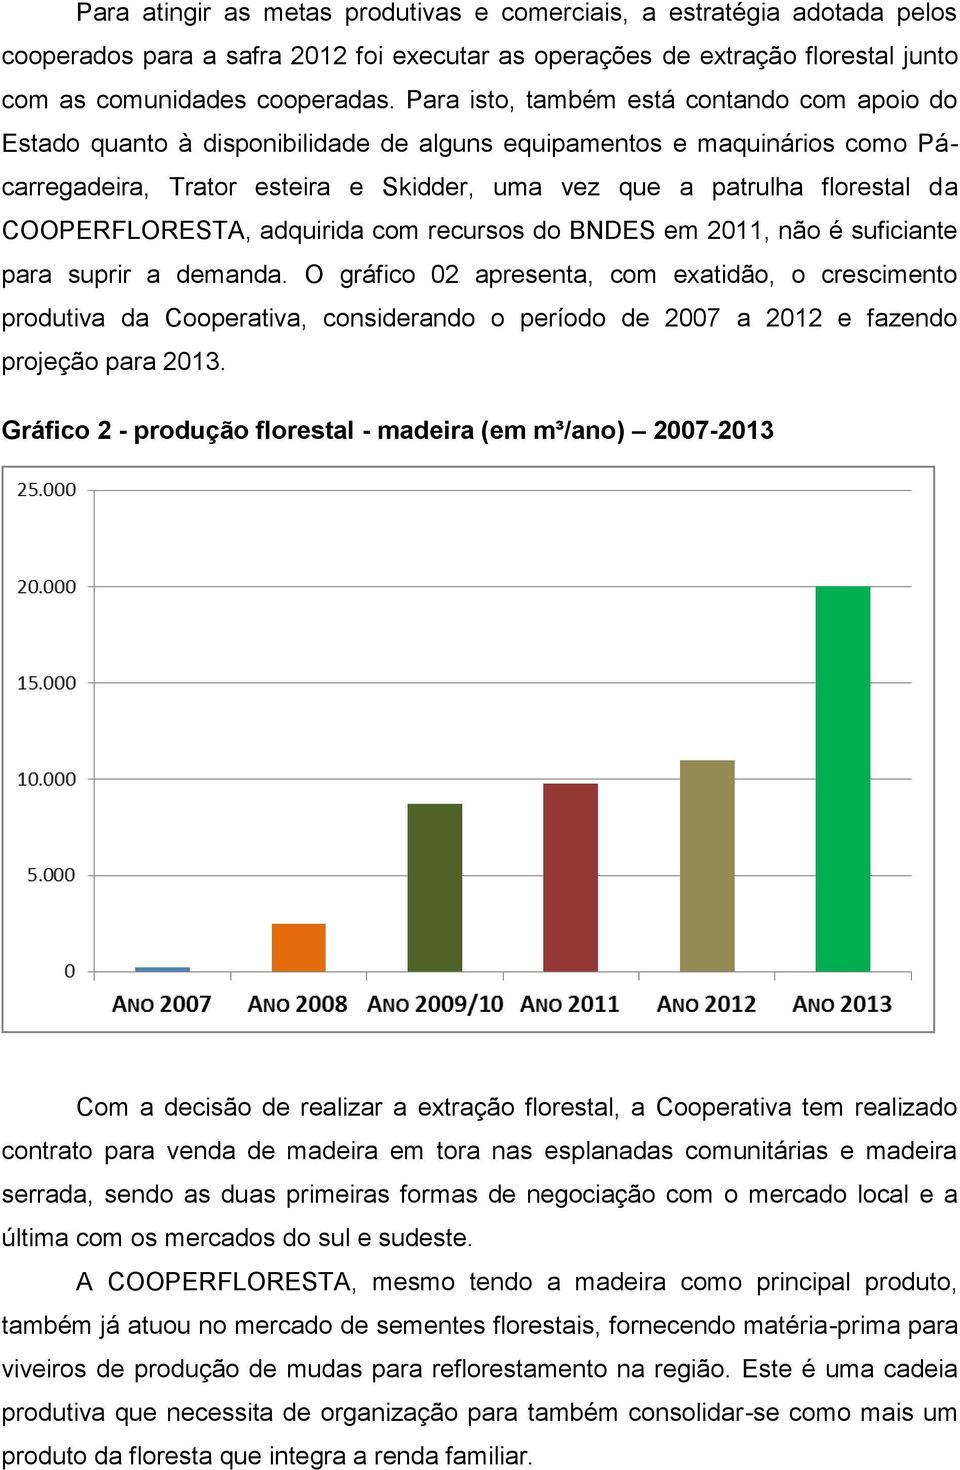 COOPERFLORESTA, adquirida com recursos do BNDES em 2011, não é suficiante para suprir a demanda.